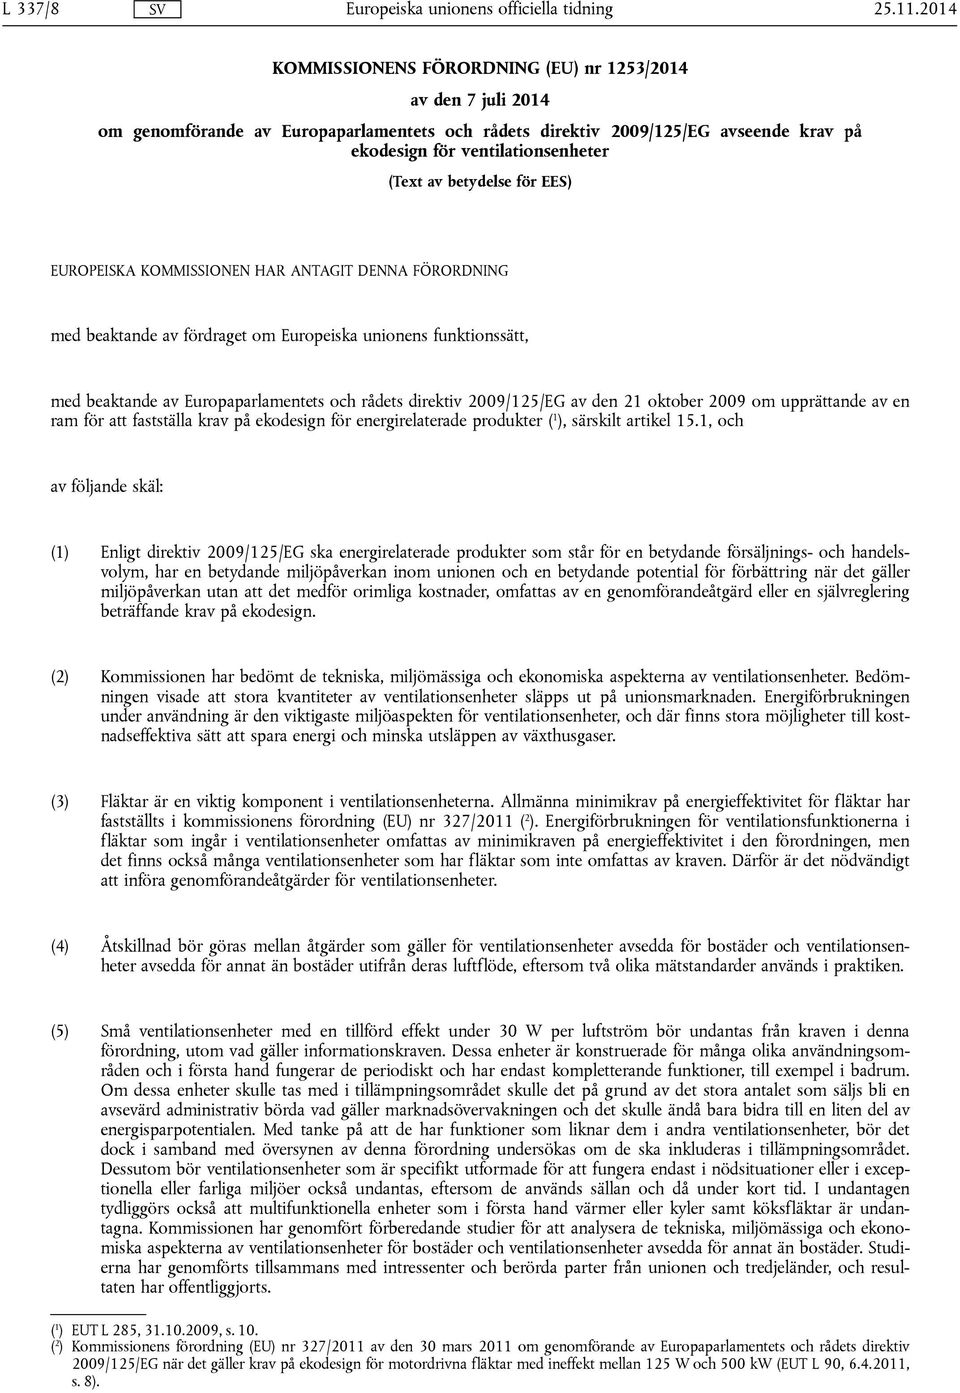 2009/125/EG av den 21 oktober 2009 om upprättande av en ram för att fastställa krav på ekodesign för energirelaterade produkter ( 1 ), särskilt artikel 15.